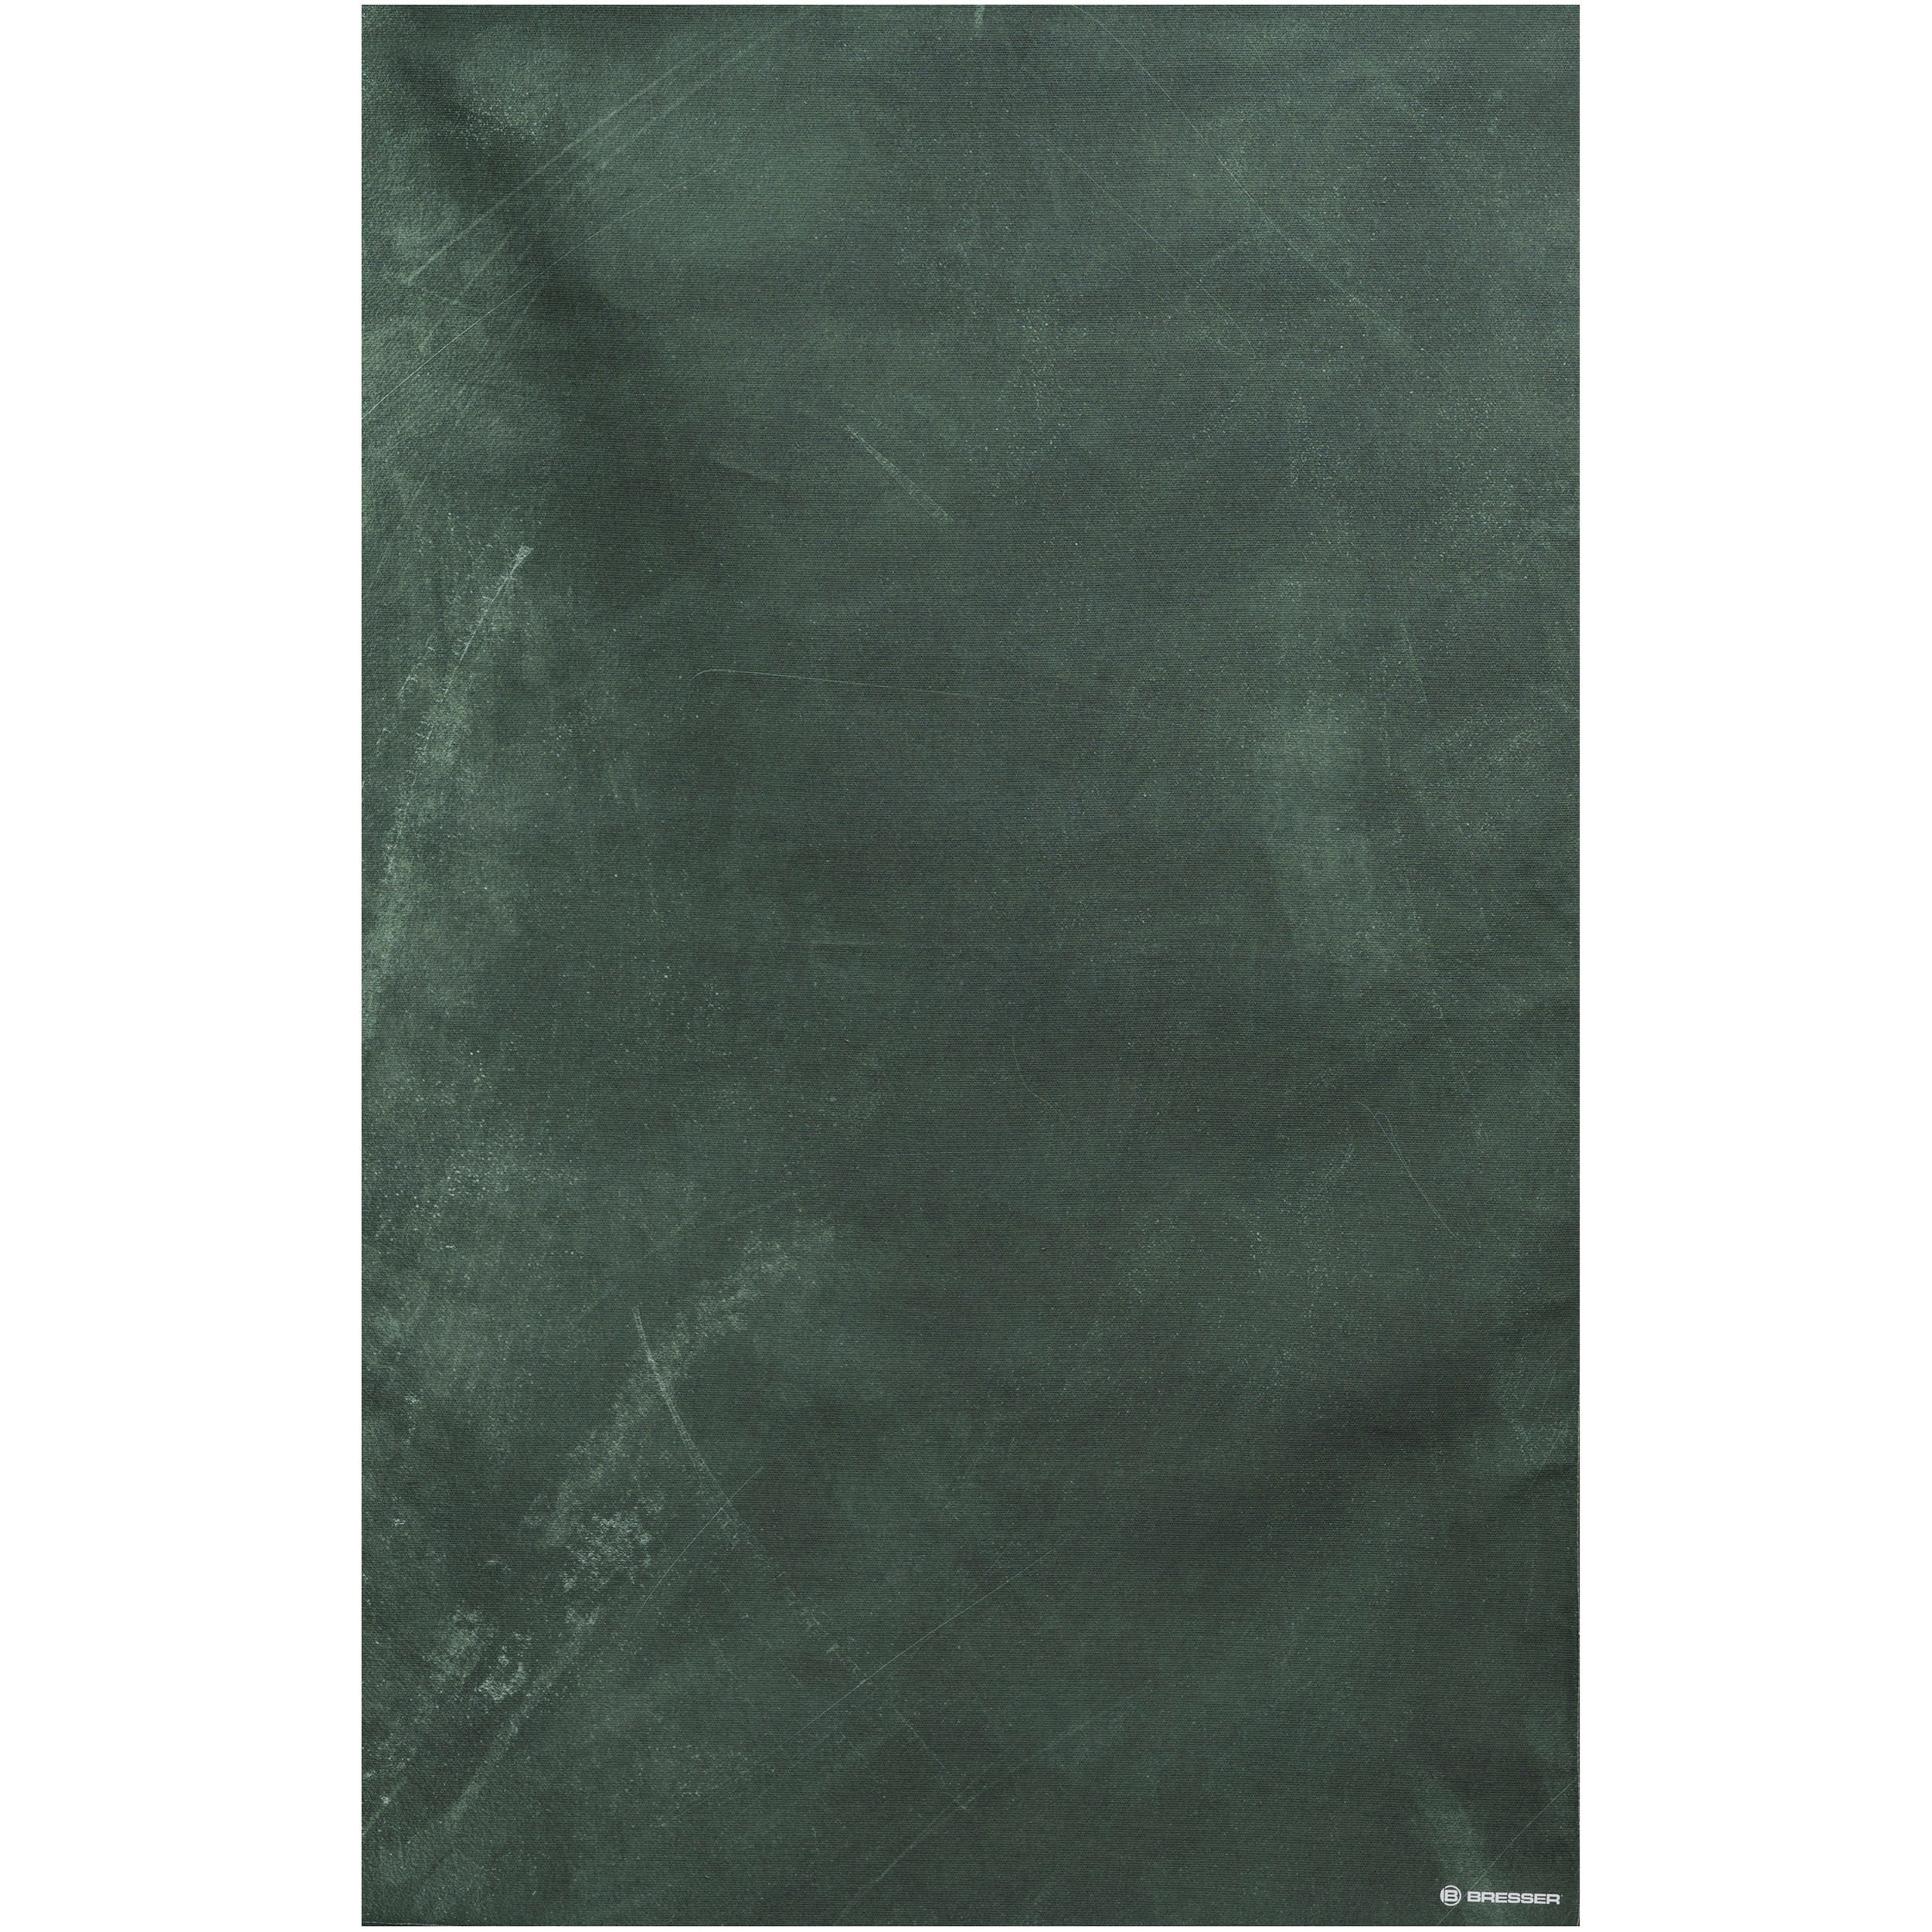 Fondo de Tela BRESSER con Estampado fotográfico 80 x 120 cm - Abstract Green